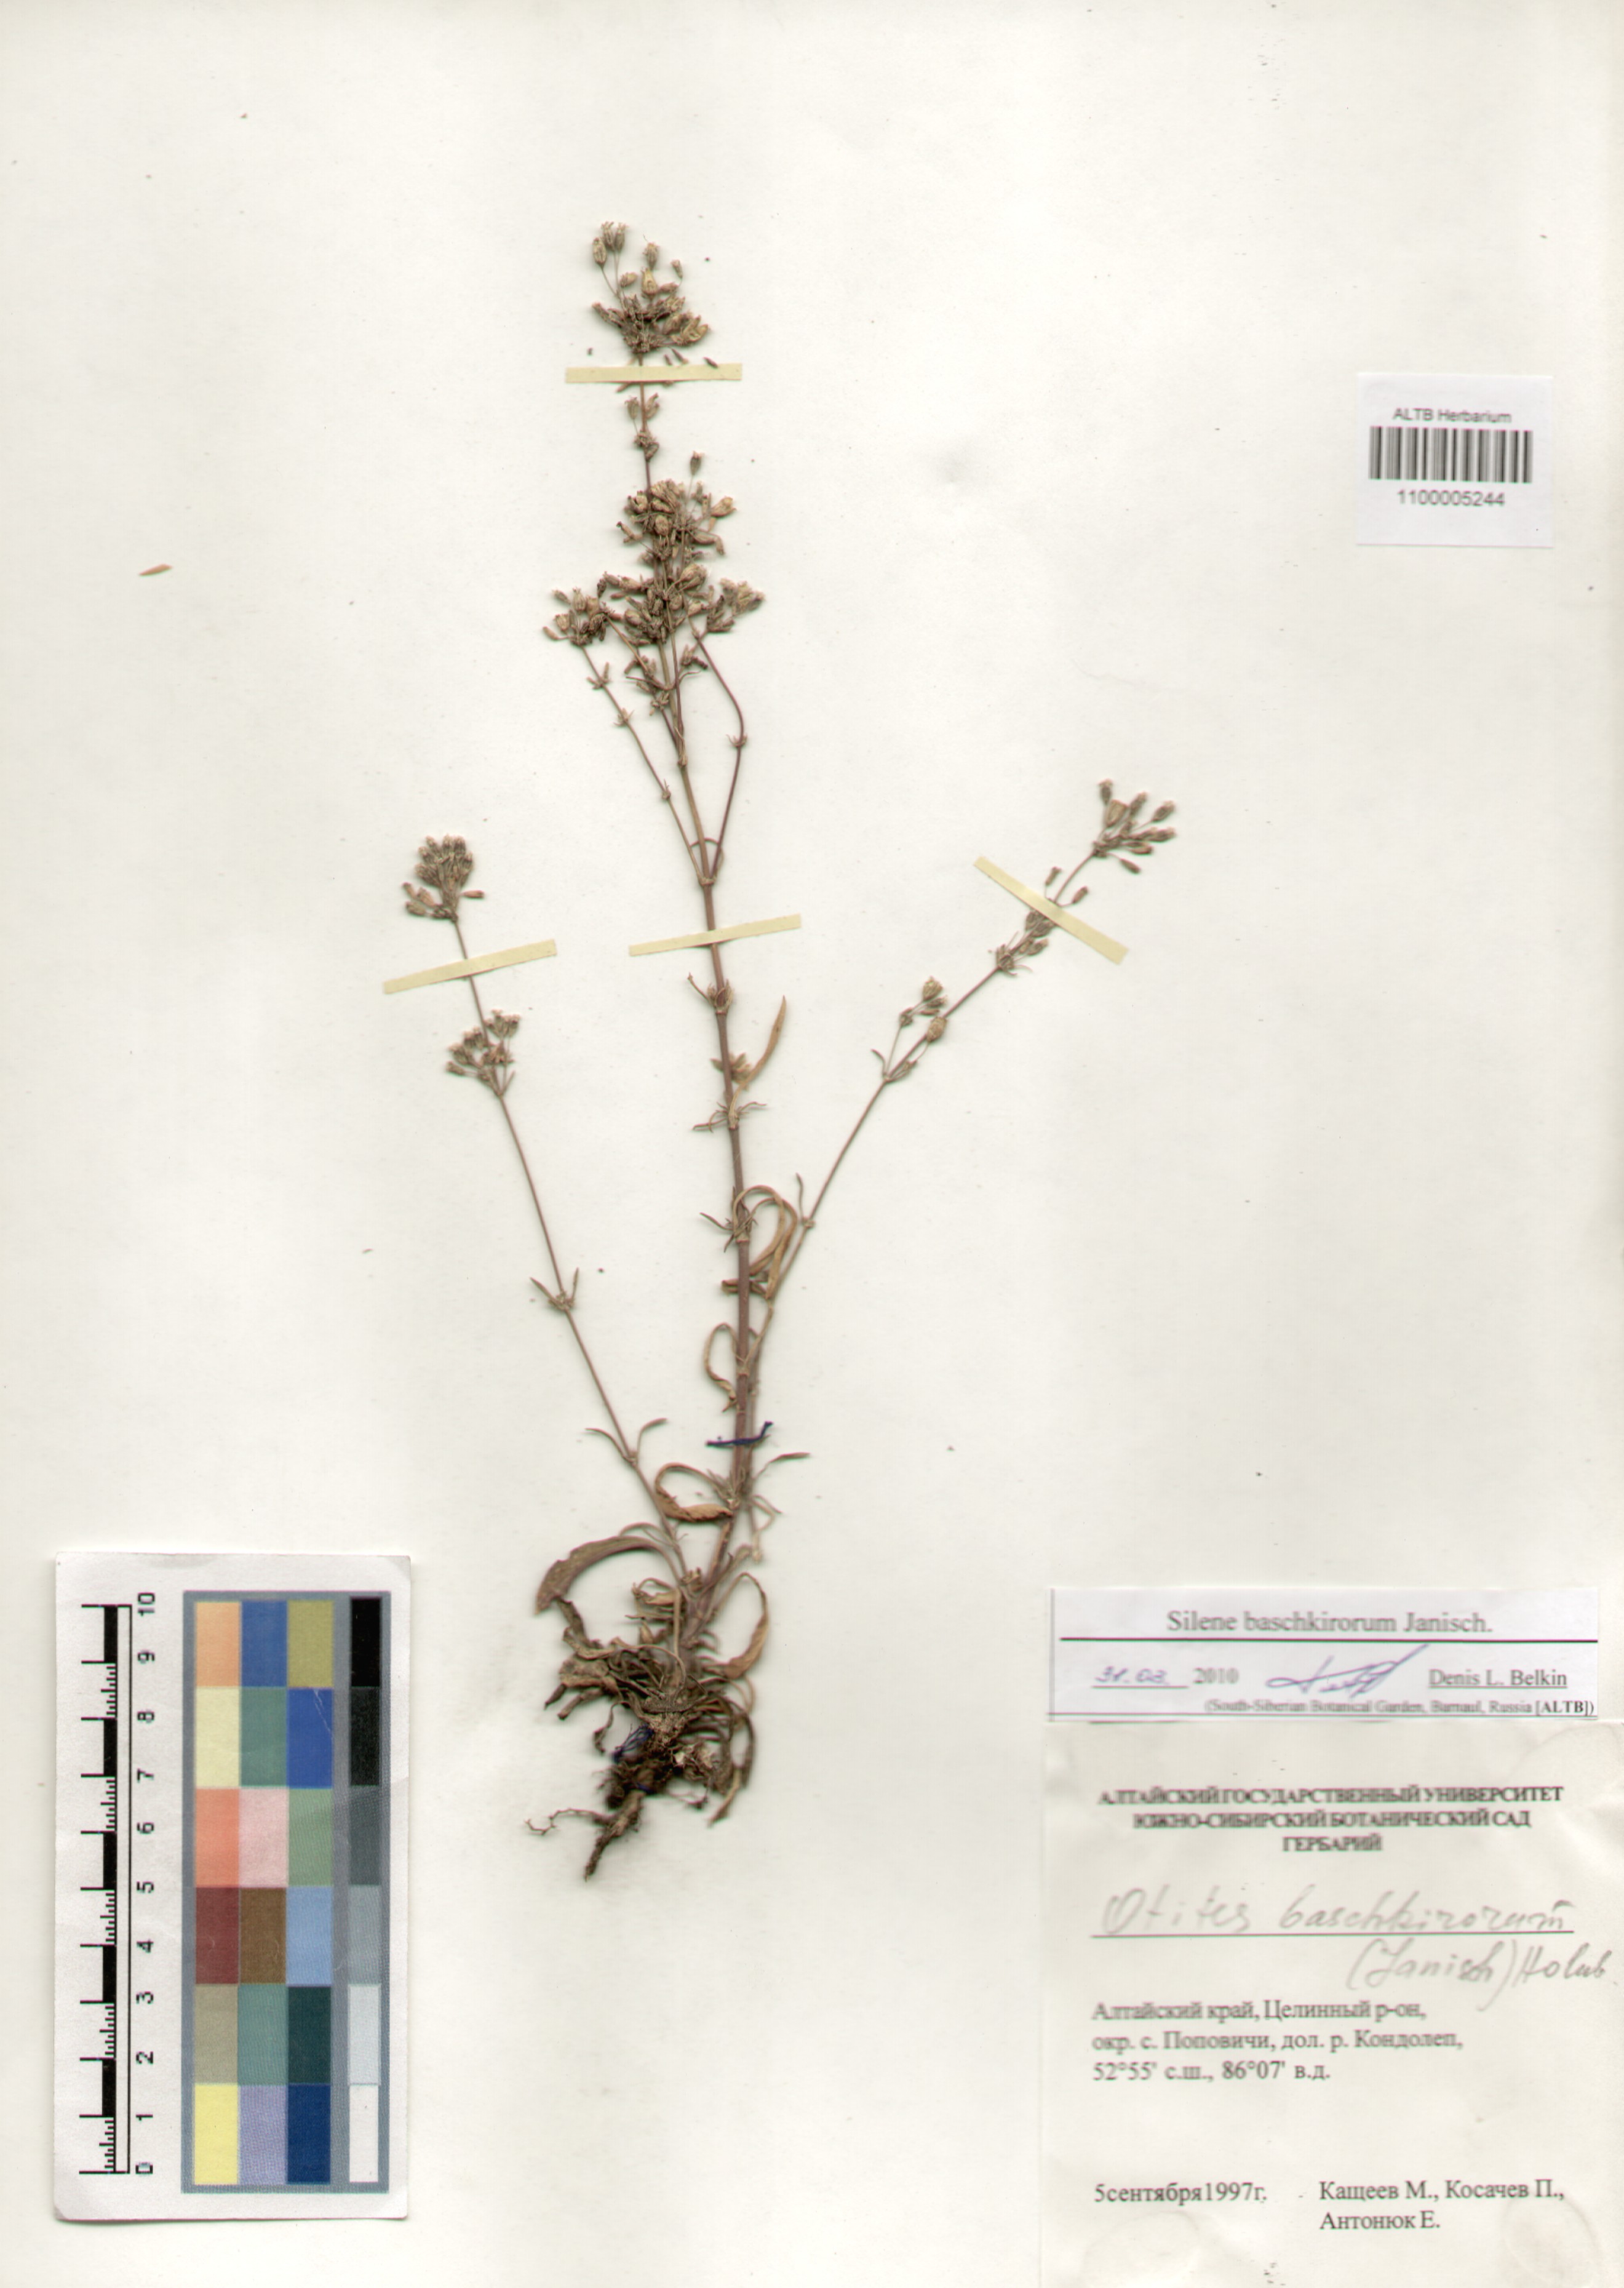 Caryophyllaceae,Silene baschkirorum Janisch.